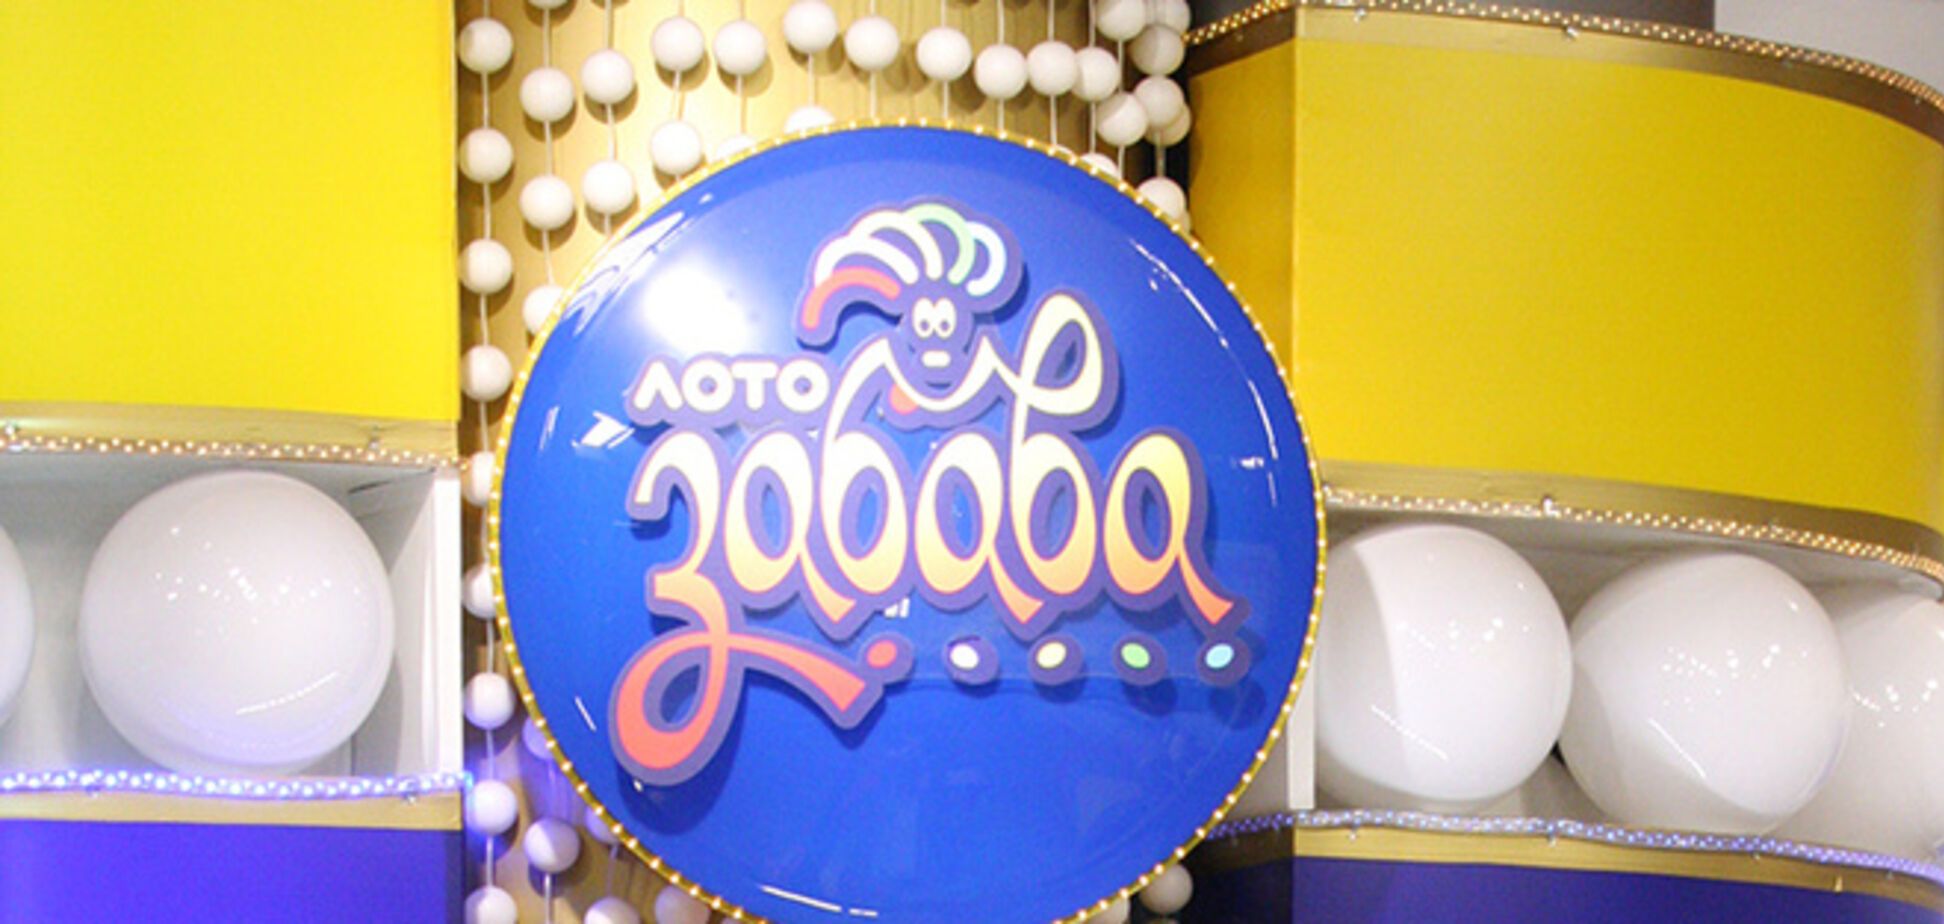 Неизвестный украинец выиграл в лотерею 3 770 000 гривен 